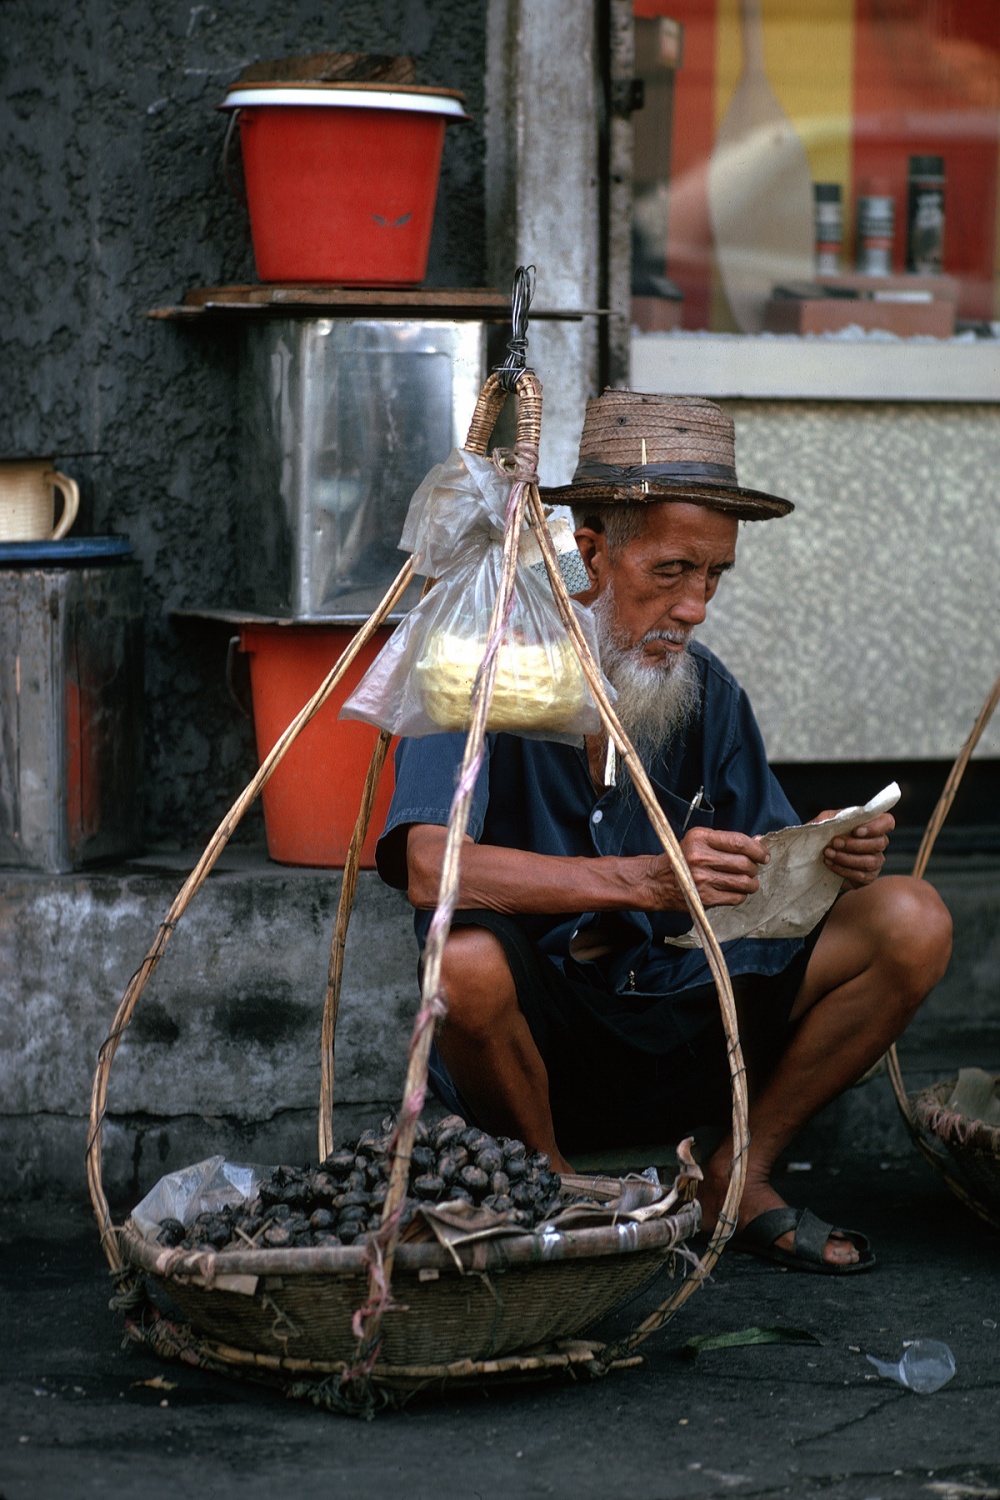 bill-hocker-water-chestnuts-chiang-mai-thailand-1974